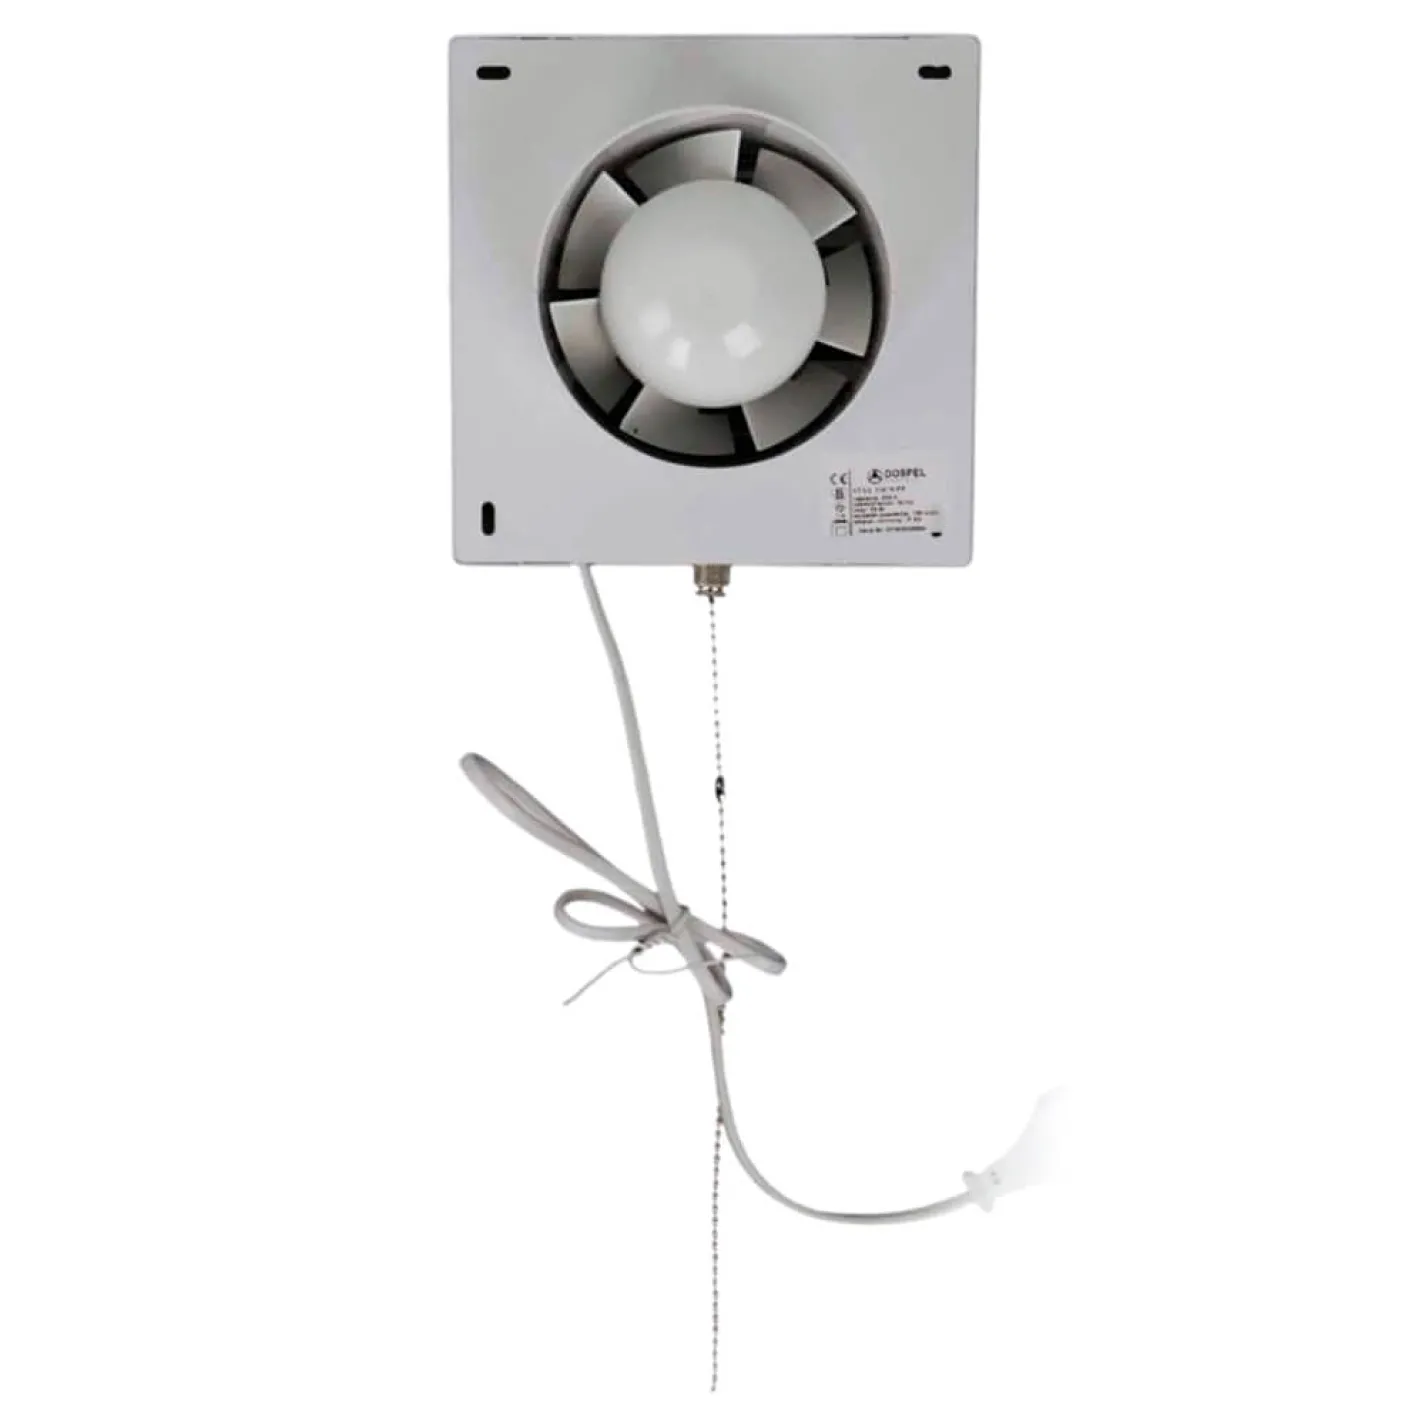 Вентилятор настенный Dospel STYL 120 WPP с клапаном, выключателем и вилкой - Фото 2